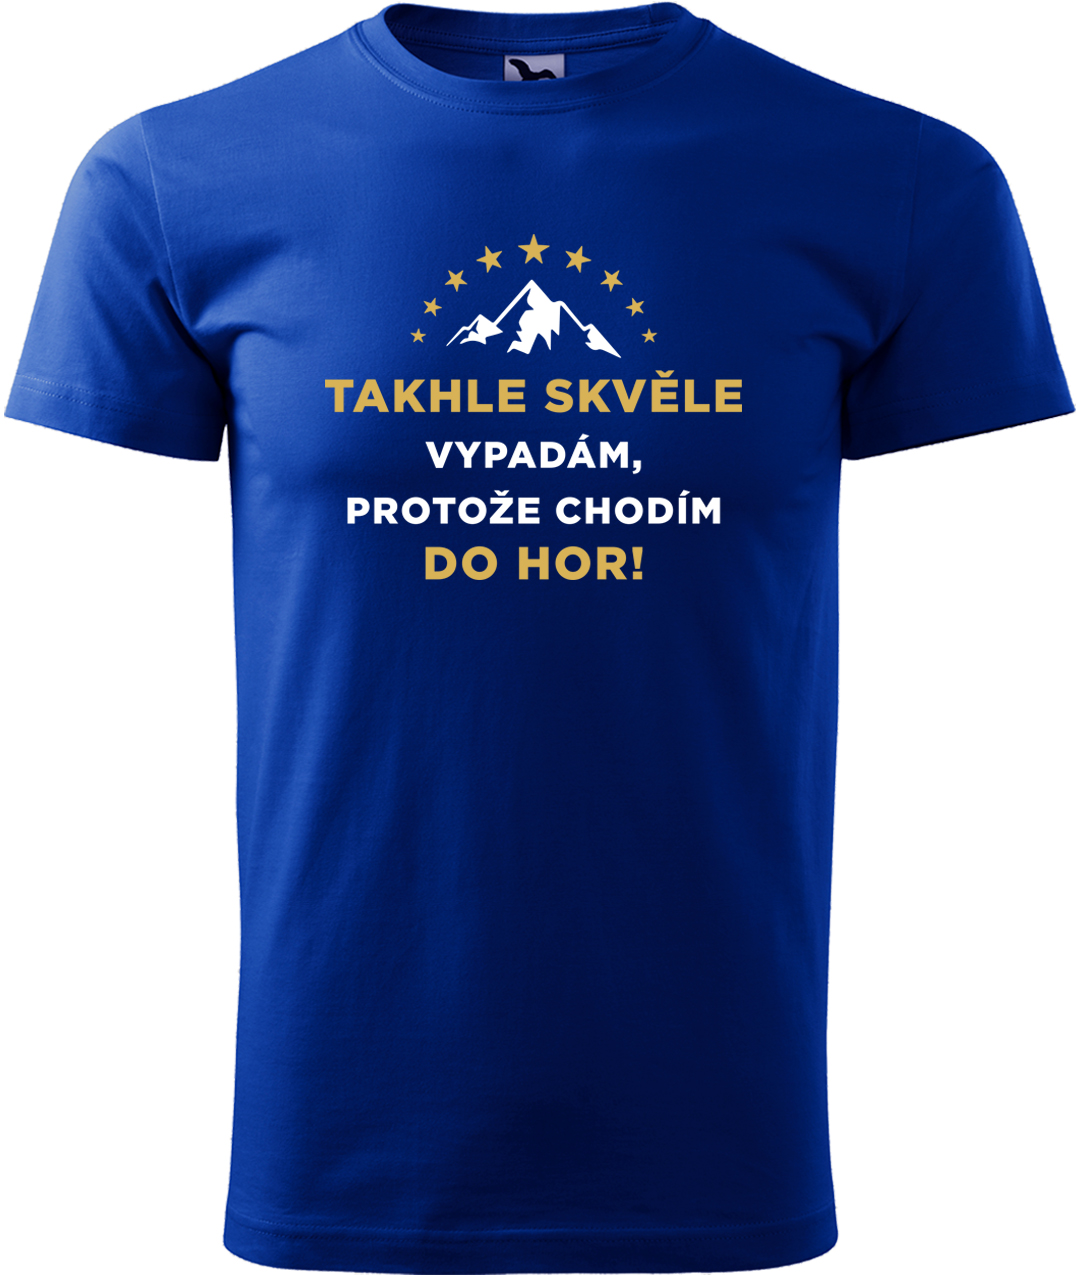 Pánské tričko na hory - Takhle skvěle vypadám, protože chodím do hor Velikost: L, Barva: Královská modrá (05), Střih: pánský